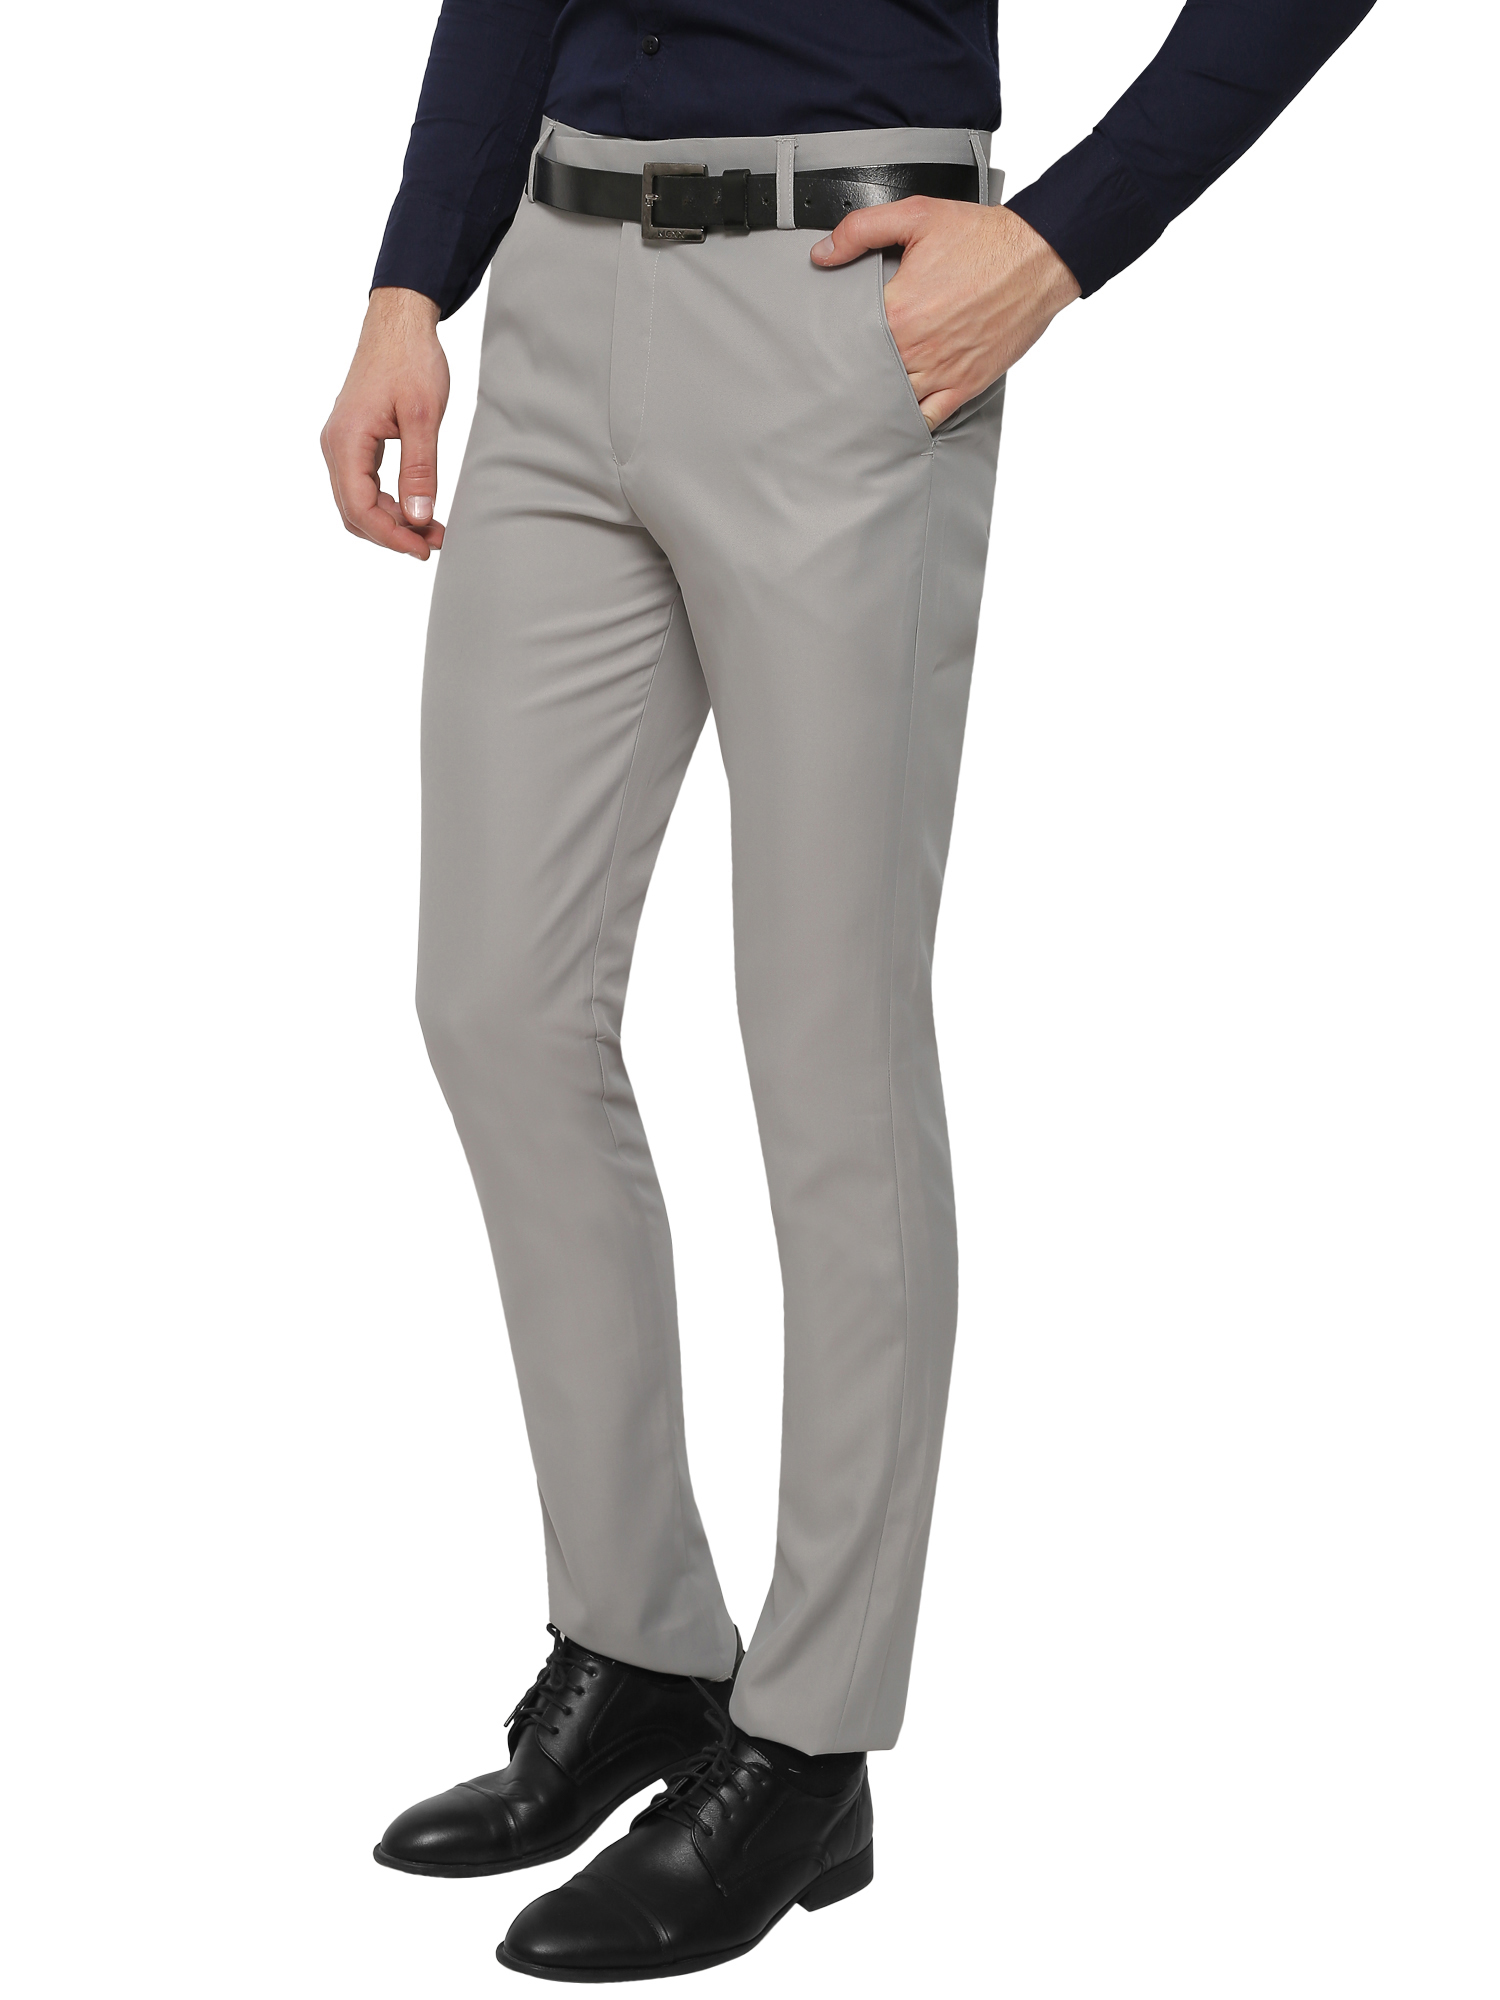 Buy Inspire Men's Light Grey Slim Fit Formal Trouser Online @ ₹429 from ...